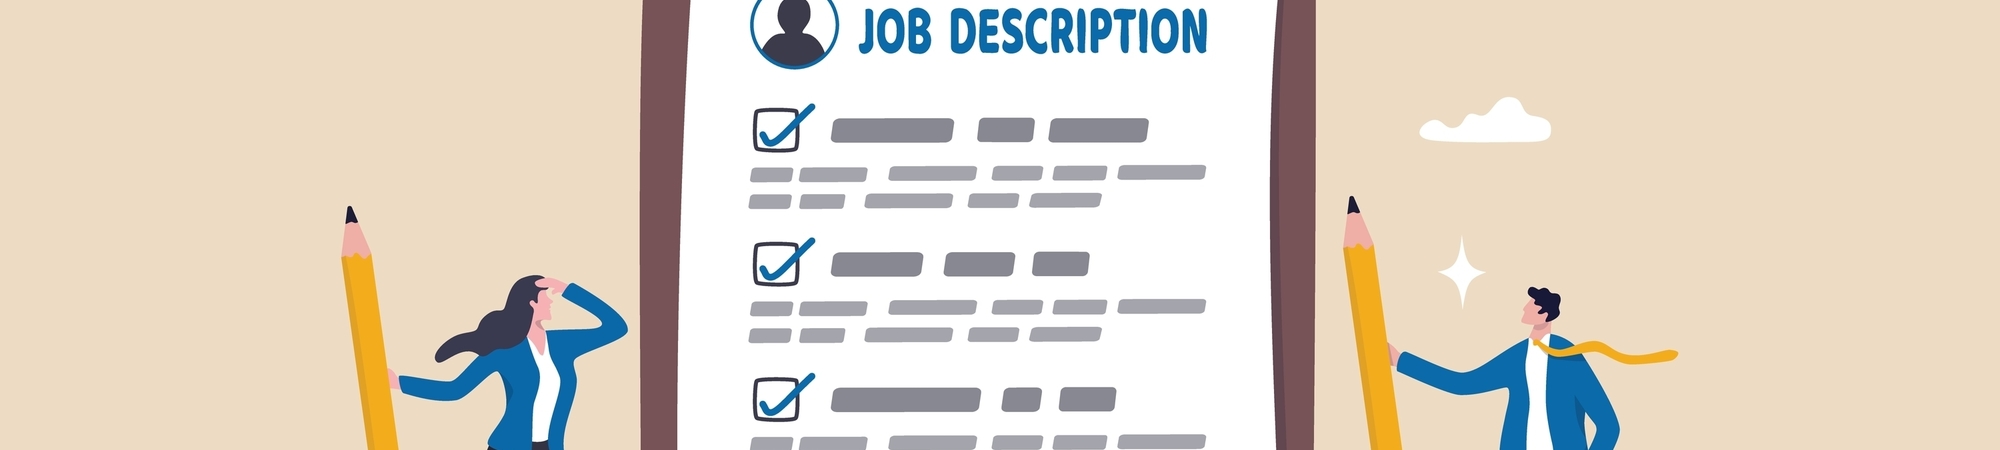 Job Description Graphic Image